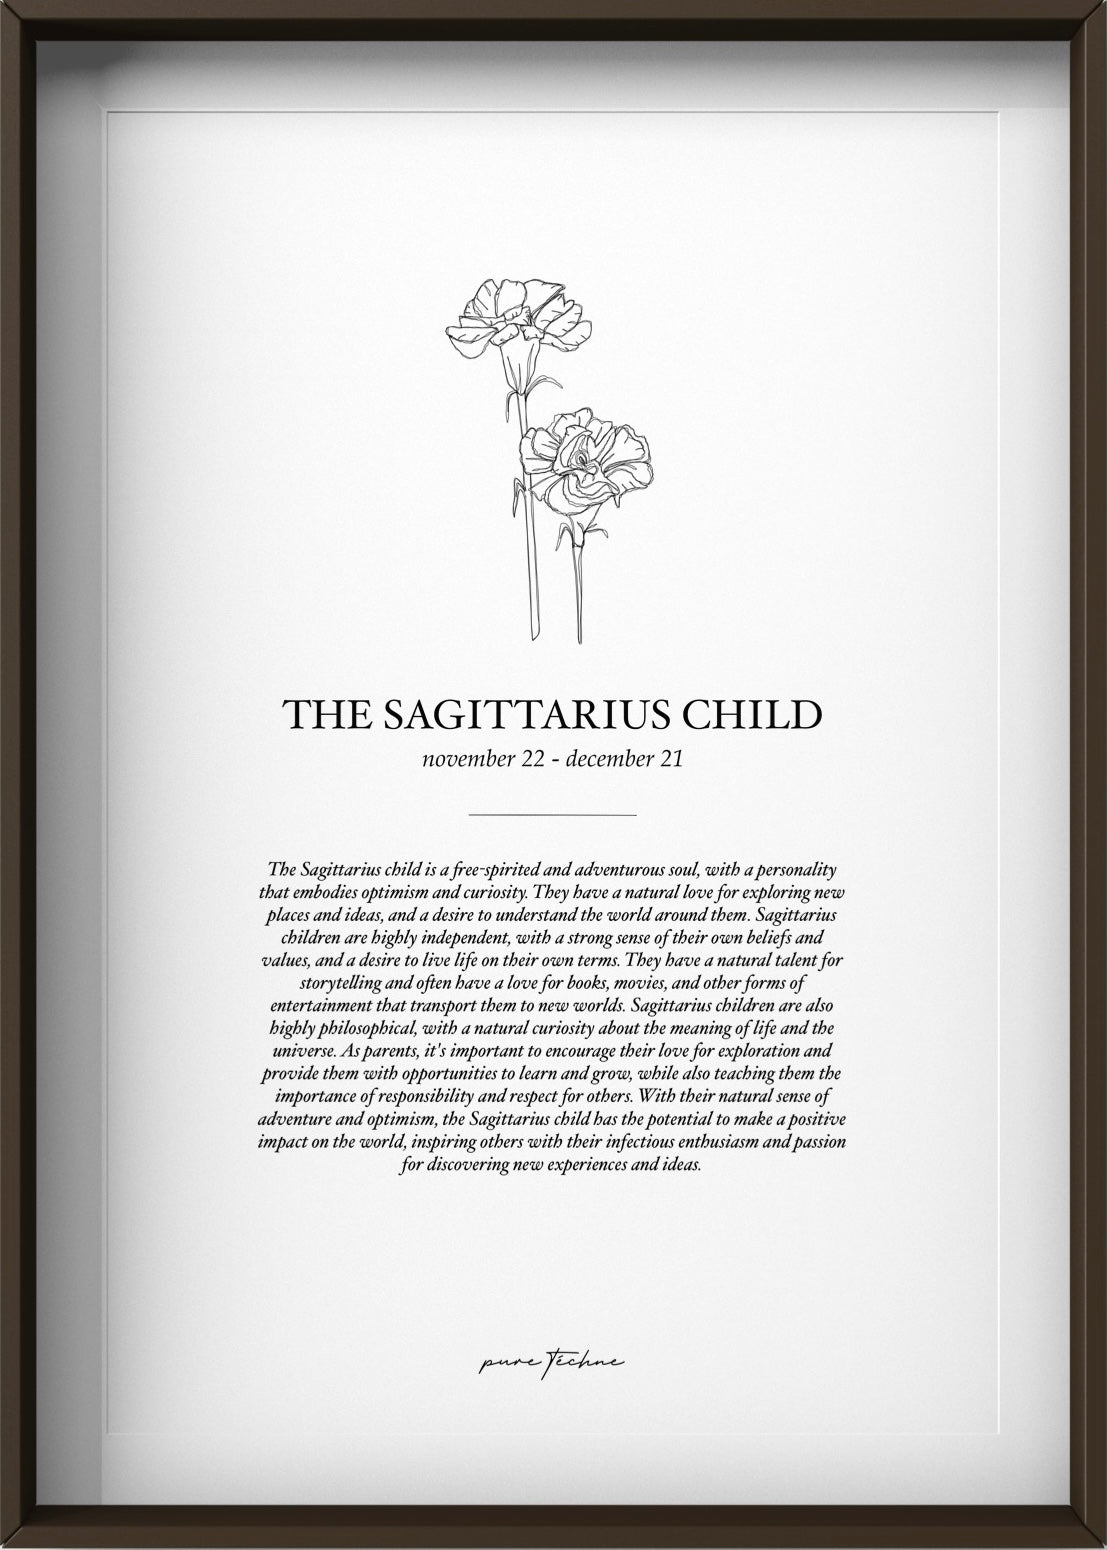 The Sagittarius Child